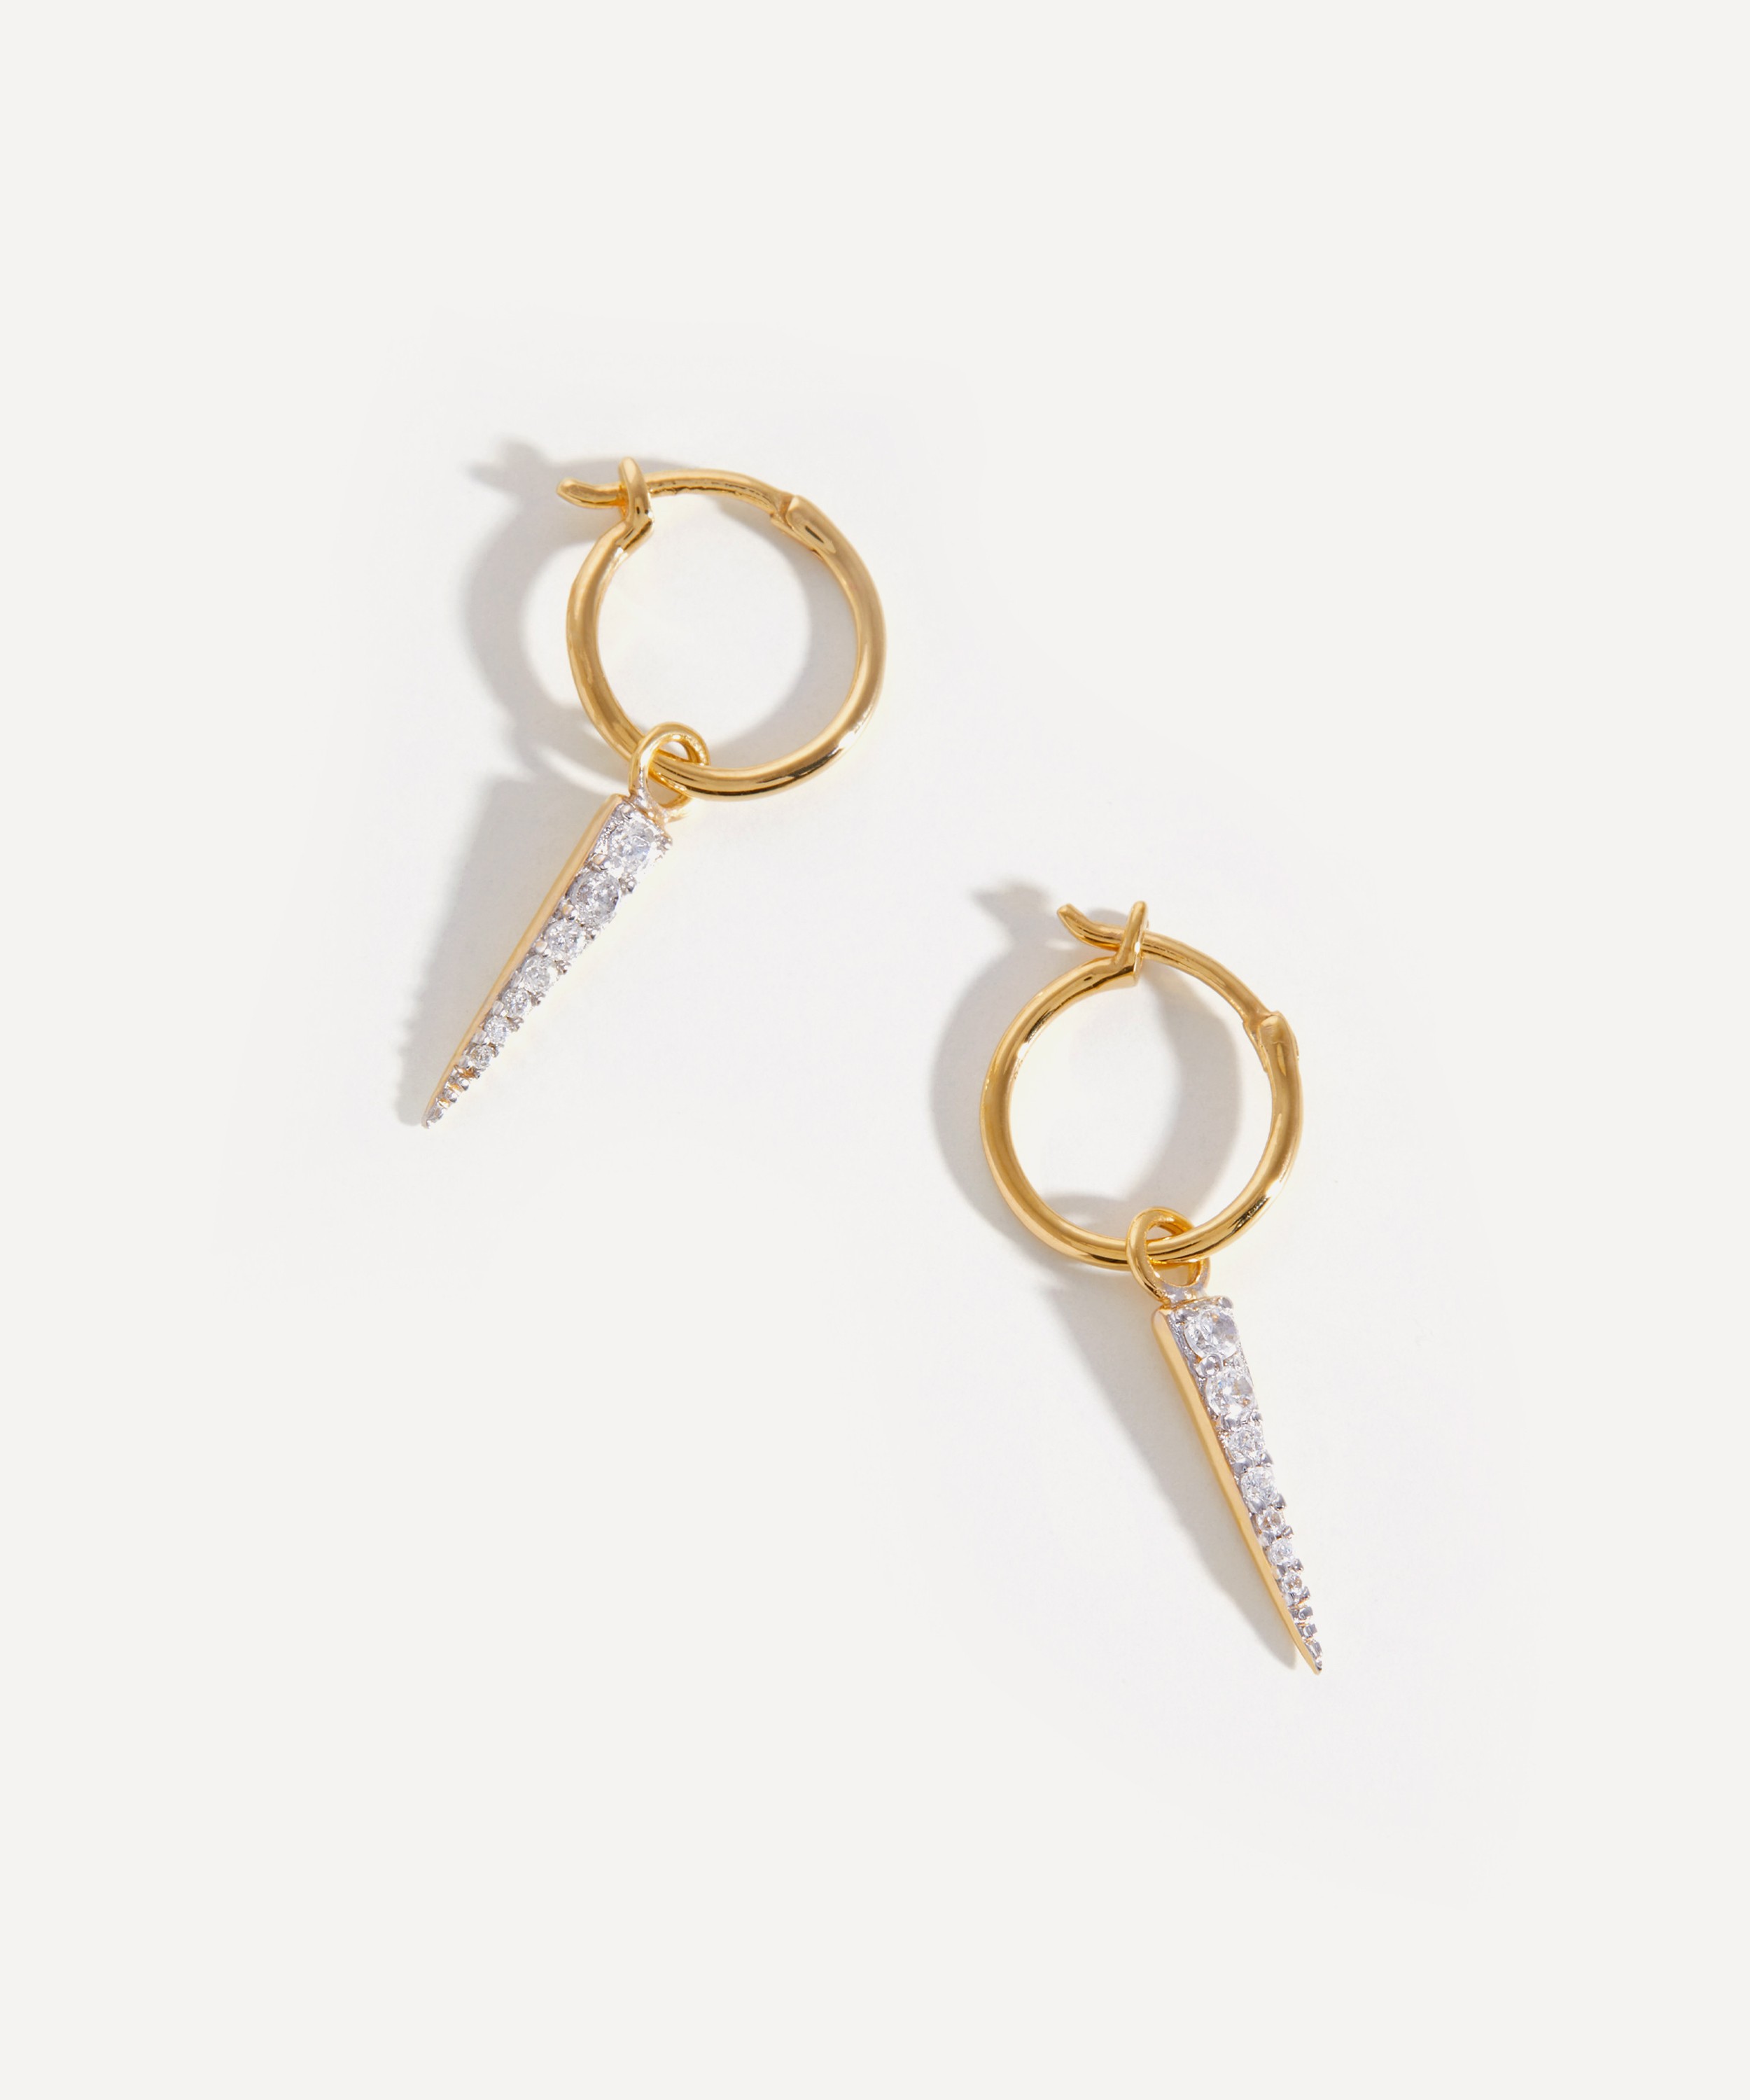 Mini Radial Hoop Earrings, 18ct Gold Plated